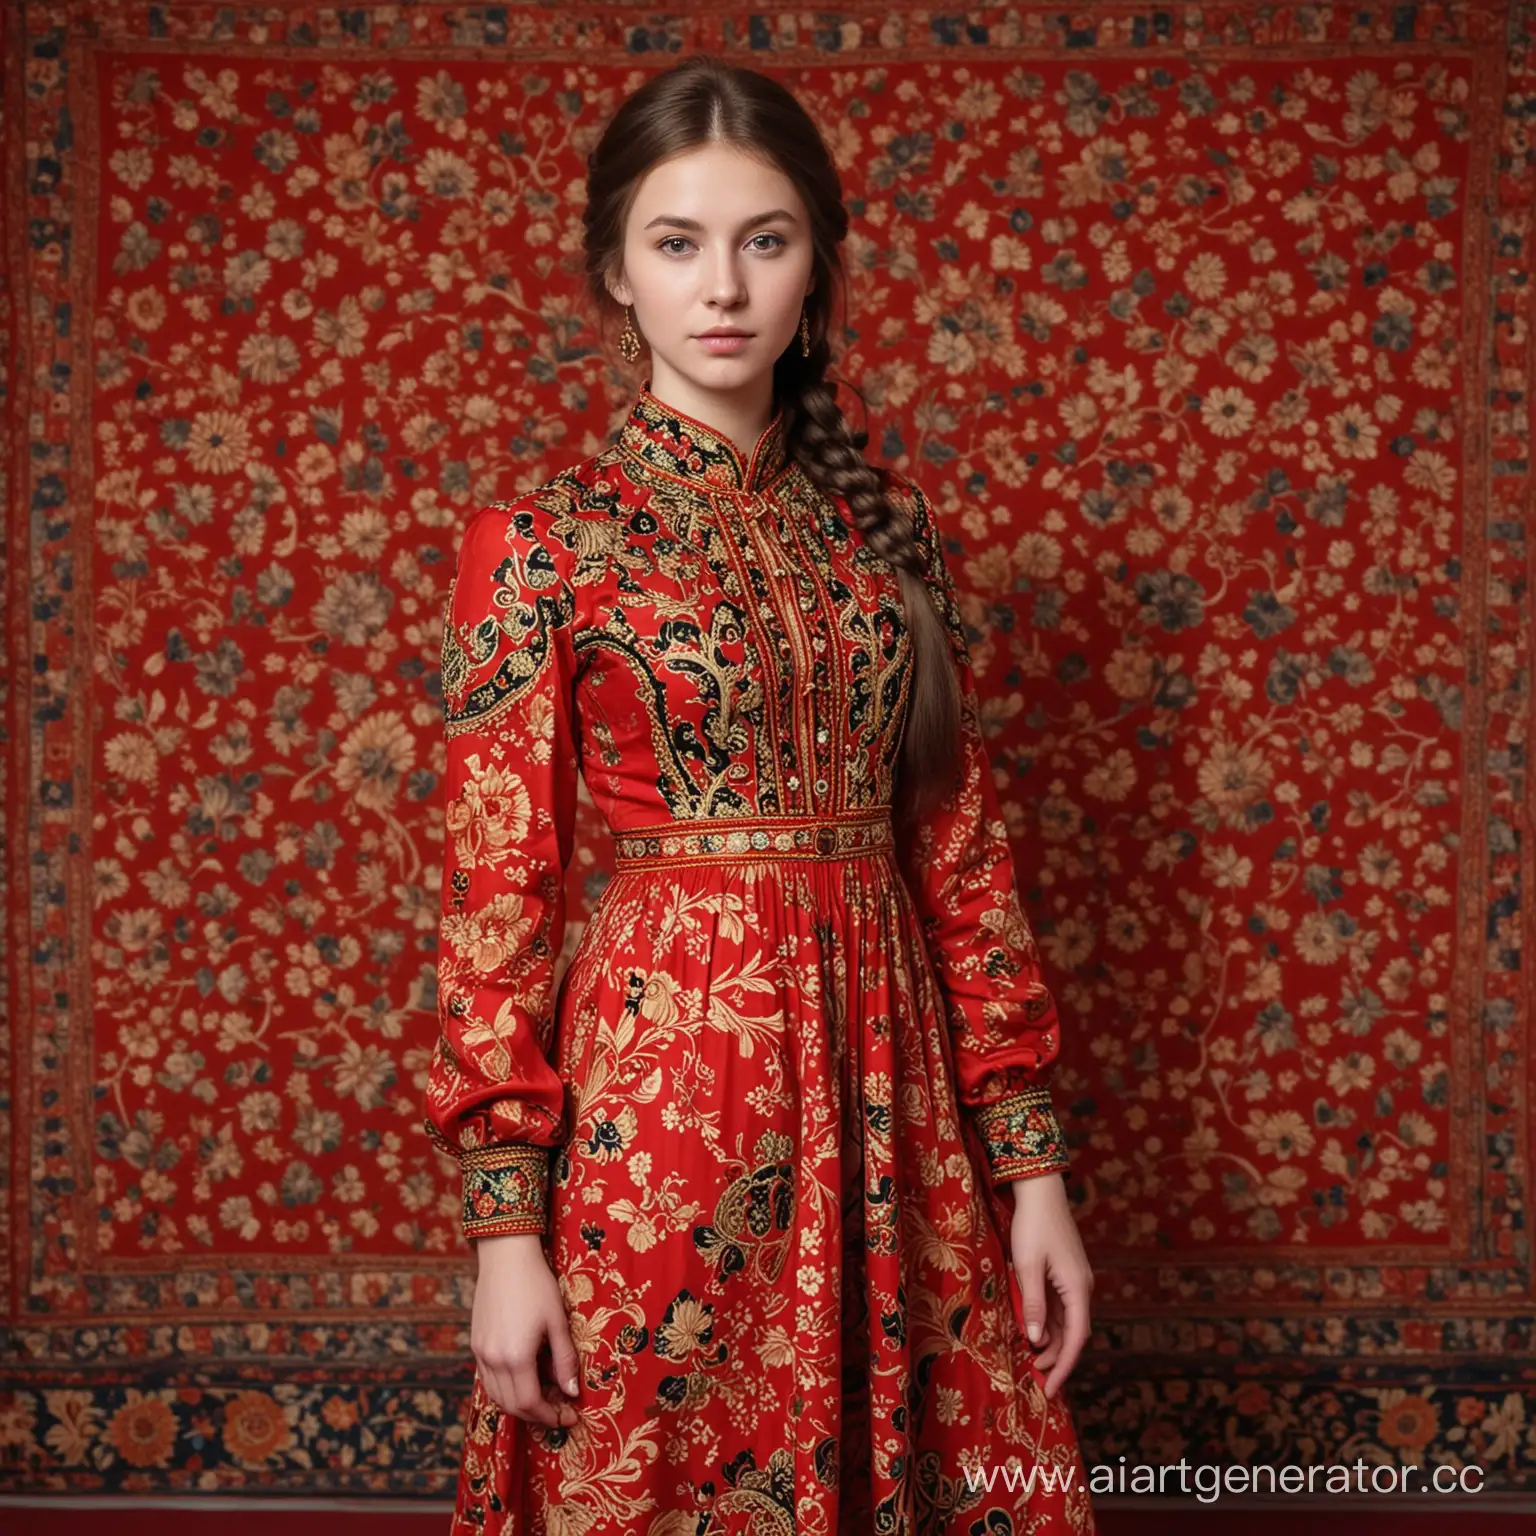 Девушка, военная, 23 лет, с рисунками Хохломы на руке красного цвета, в длинном, красном платье в пол.